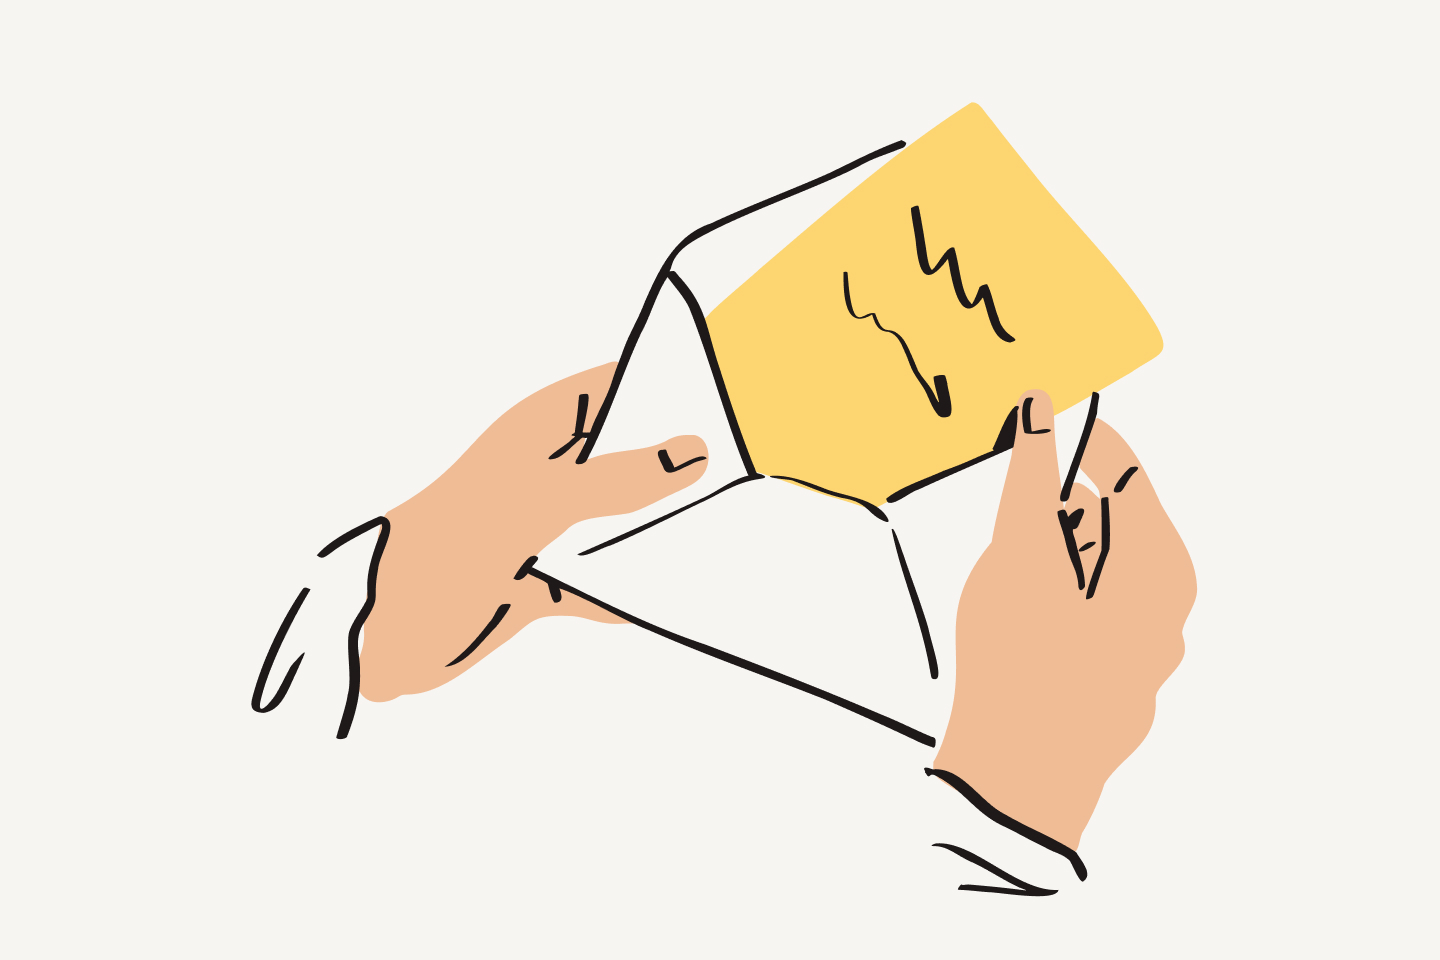 Una persona saca un trozo de papel amarillo escrito de un sobre.